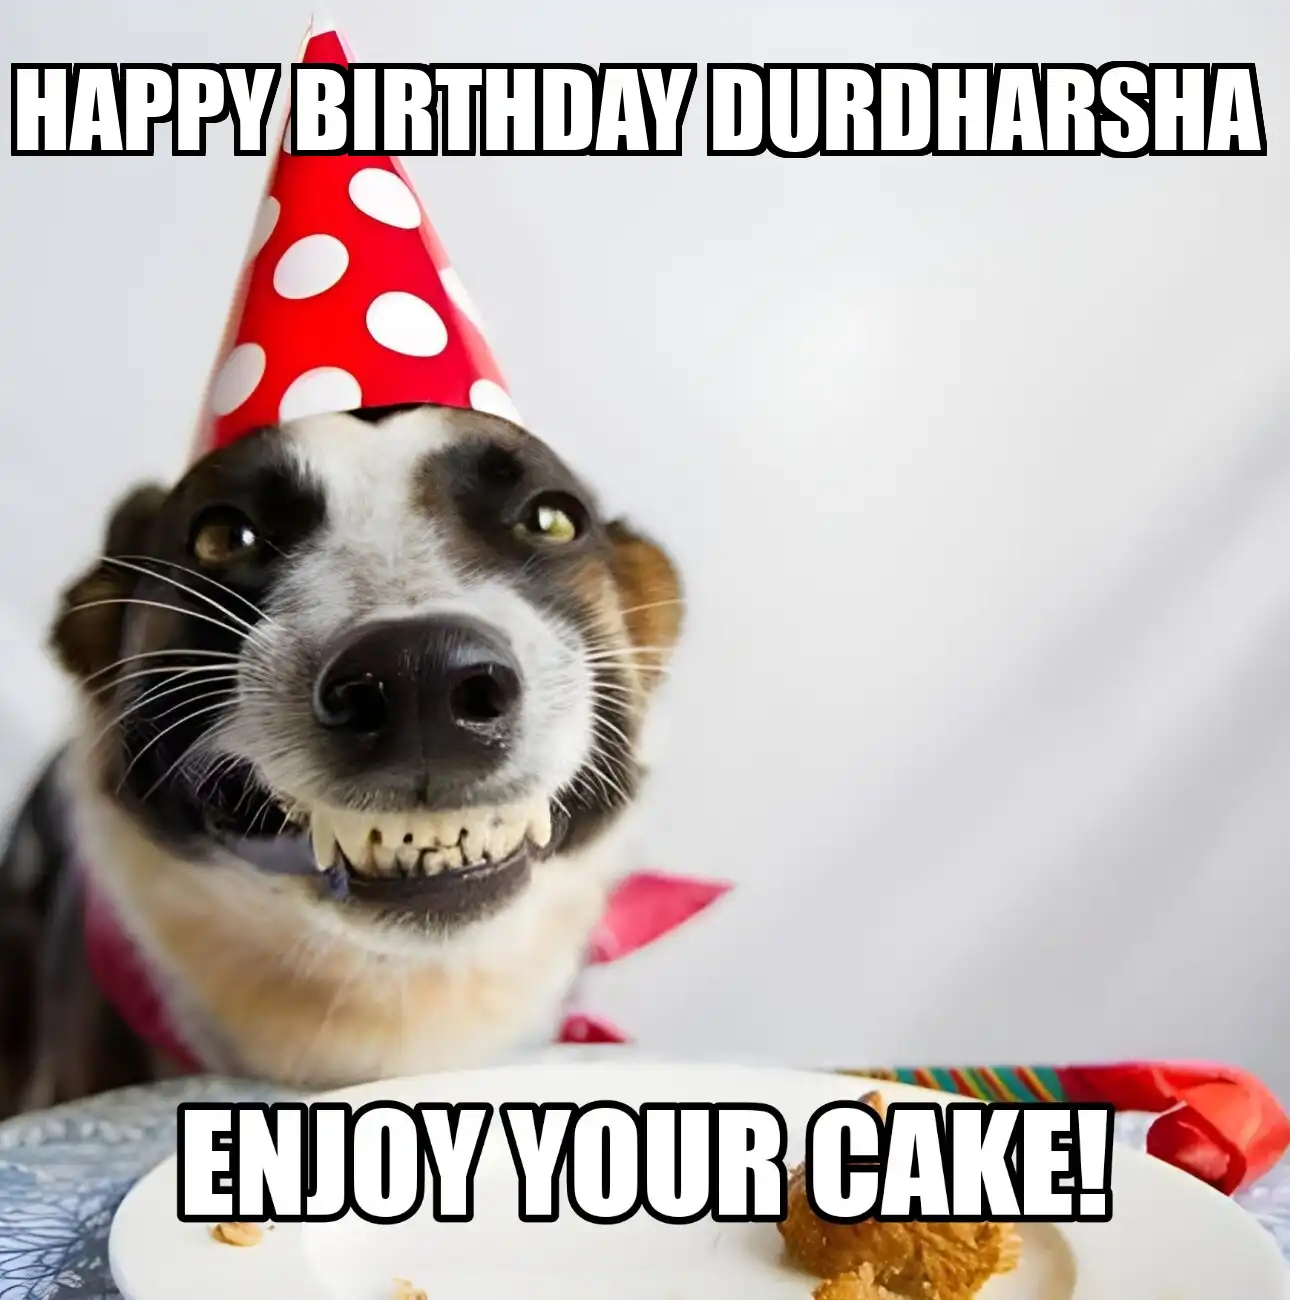 Happy Birthday Durdharsha Enjoy Your Cake Dog Meme